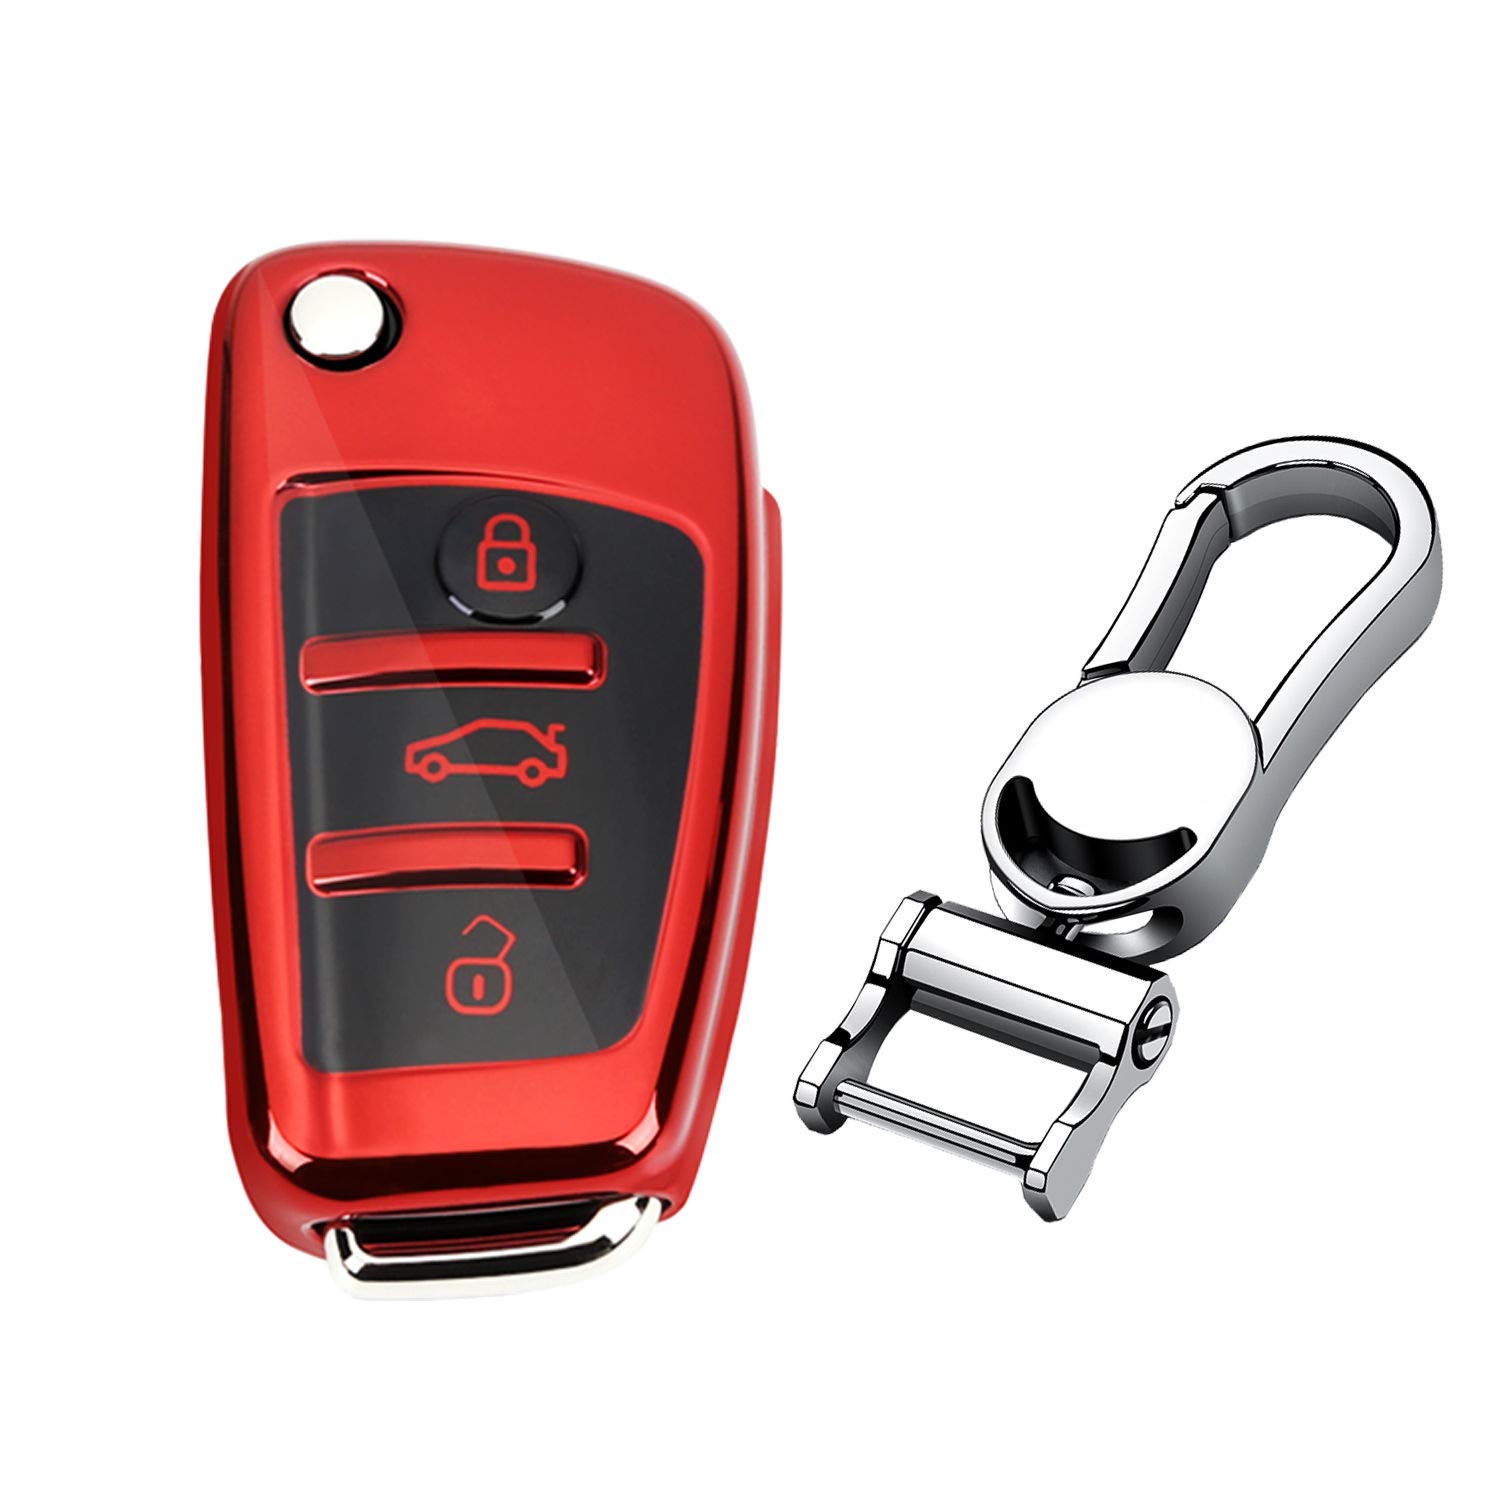 M.JVisun TPU Weich Autoschlüssel Fall für Audi A1 A3 A4 A6 A8 Quattro Q2 Q3 Q7 R8 RS3 RS6 S3 S6 TT TTS Silikon Schlüssel Hülle - Glänzend Rot - Metall Schlüsselbund von M.JVisun